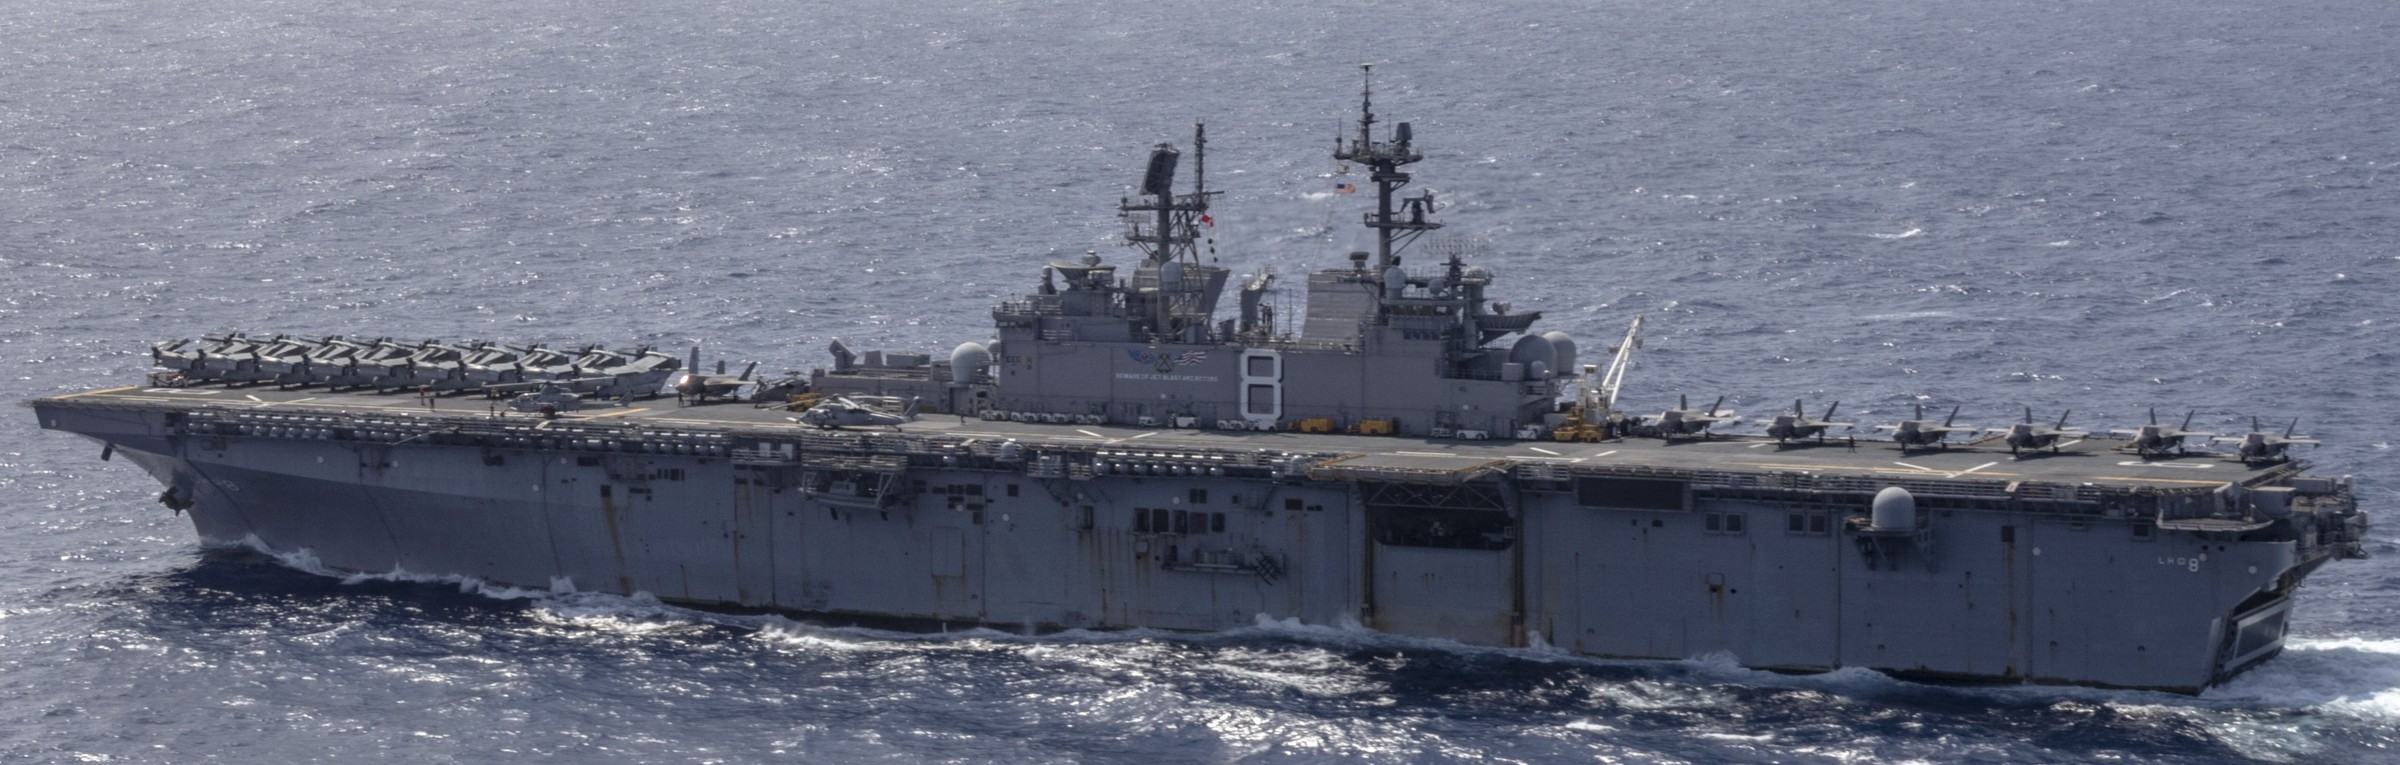 lhd-8 uss makin island amphibious assault ship landing helicopter dock us navy vmm-362 marines 10